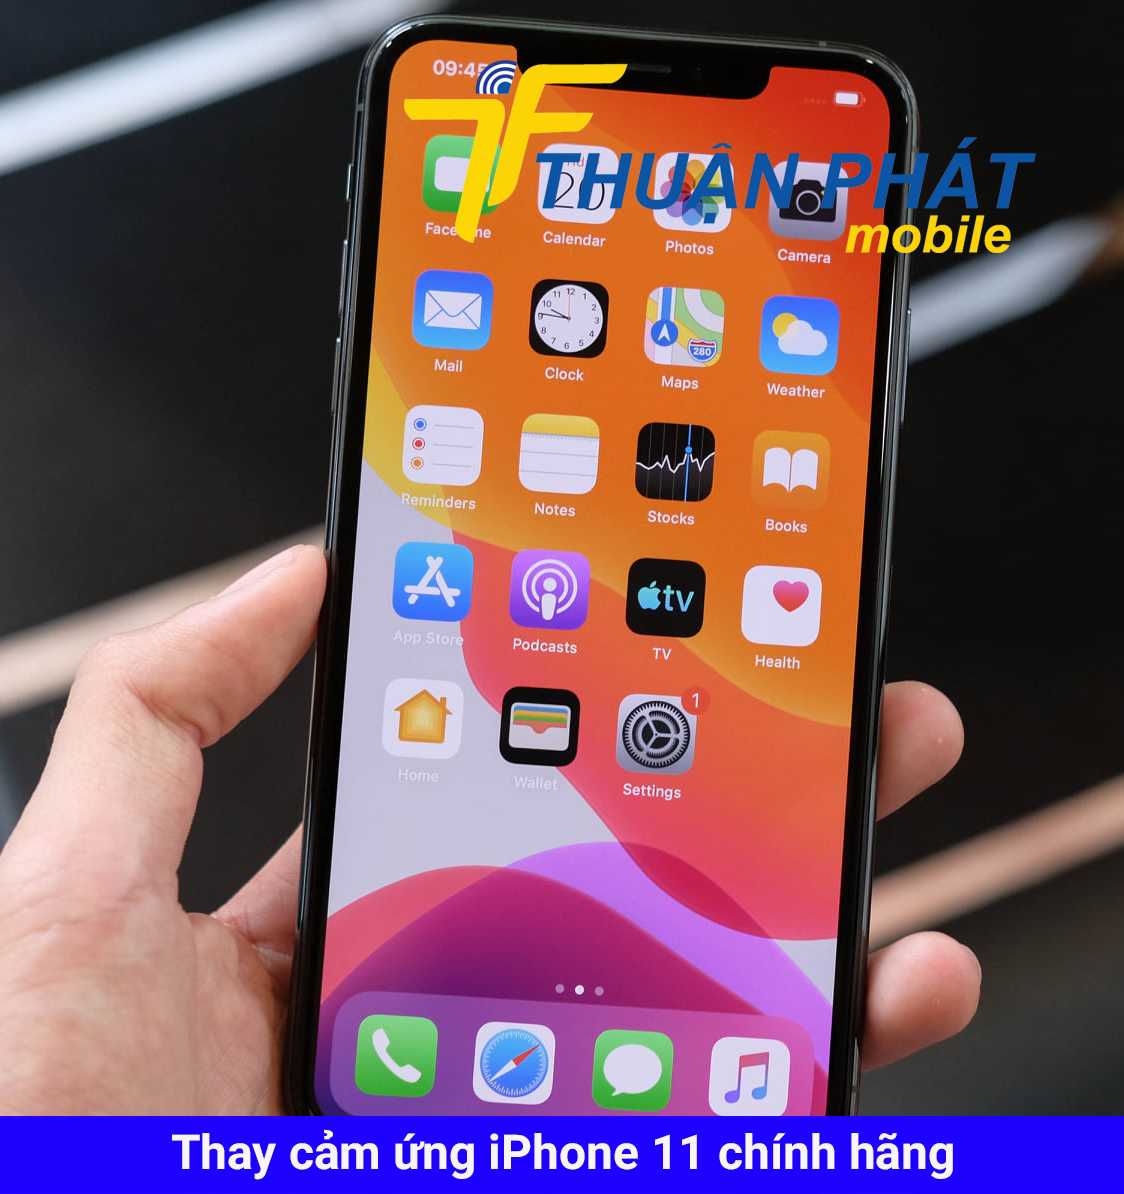 Thay cảm ứng iPhone 11 chính hãng tại Thuận Phát Mobile